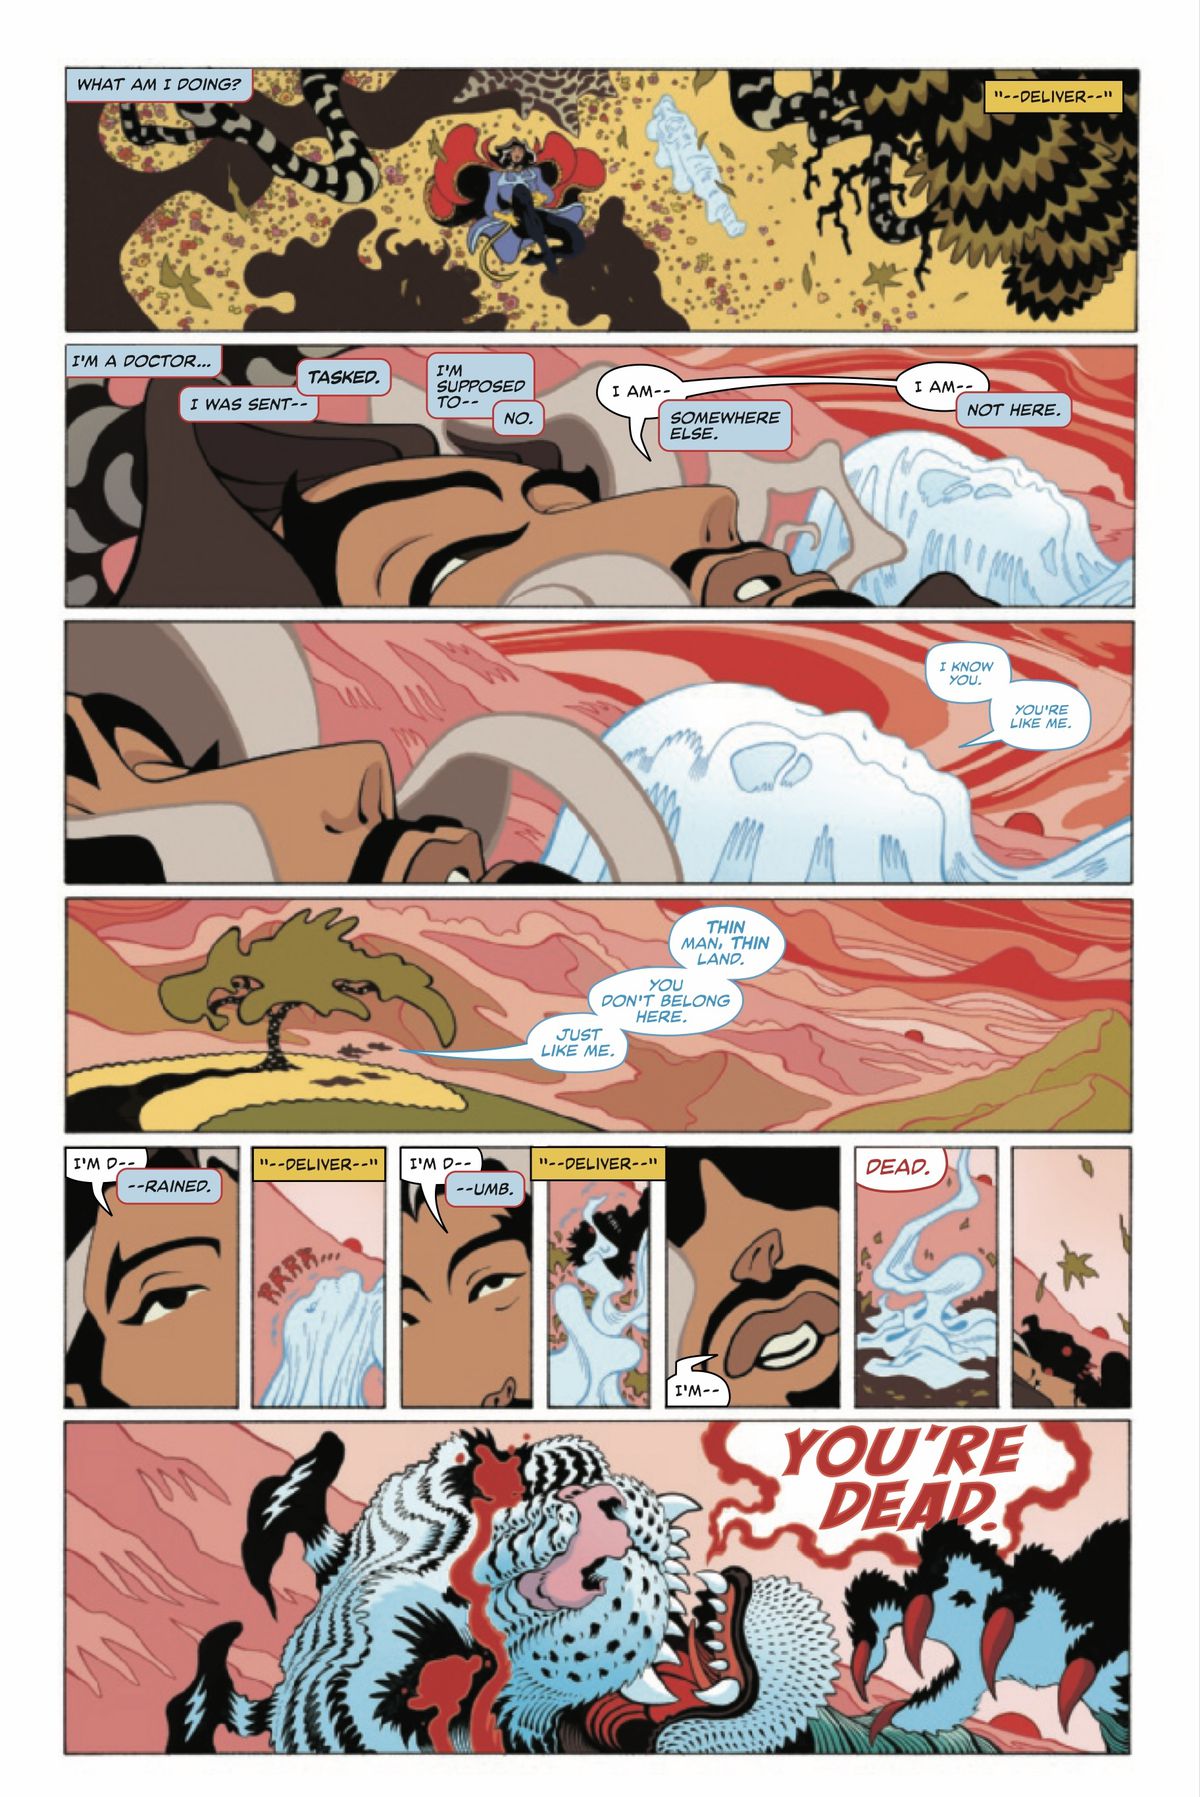 Una pagina di Doctor Strange # 1 (Marvel Comics, 2022) in cui Doctor Strange si sveglia dal sonno e una tigre spettrale appare accanto a schernirlo.